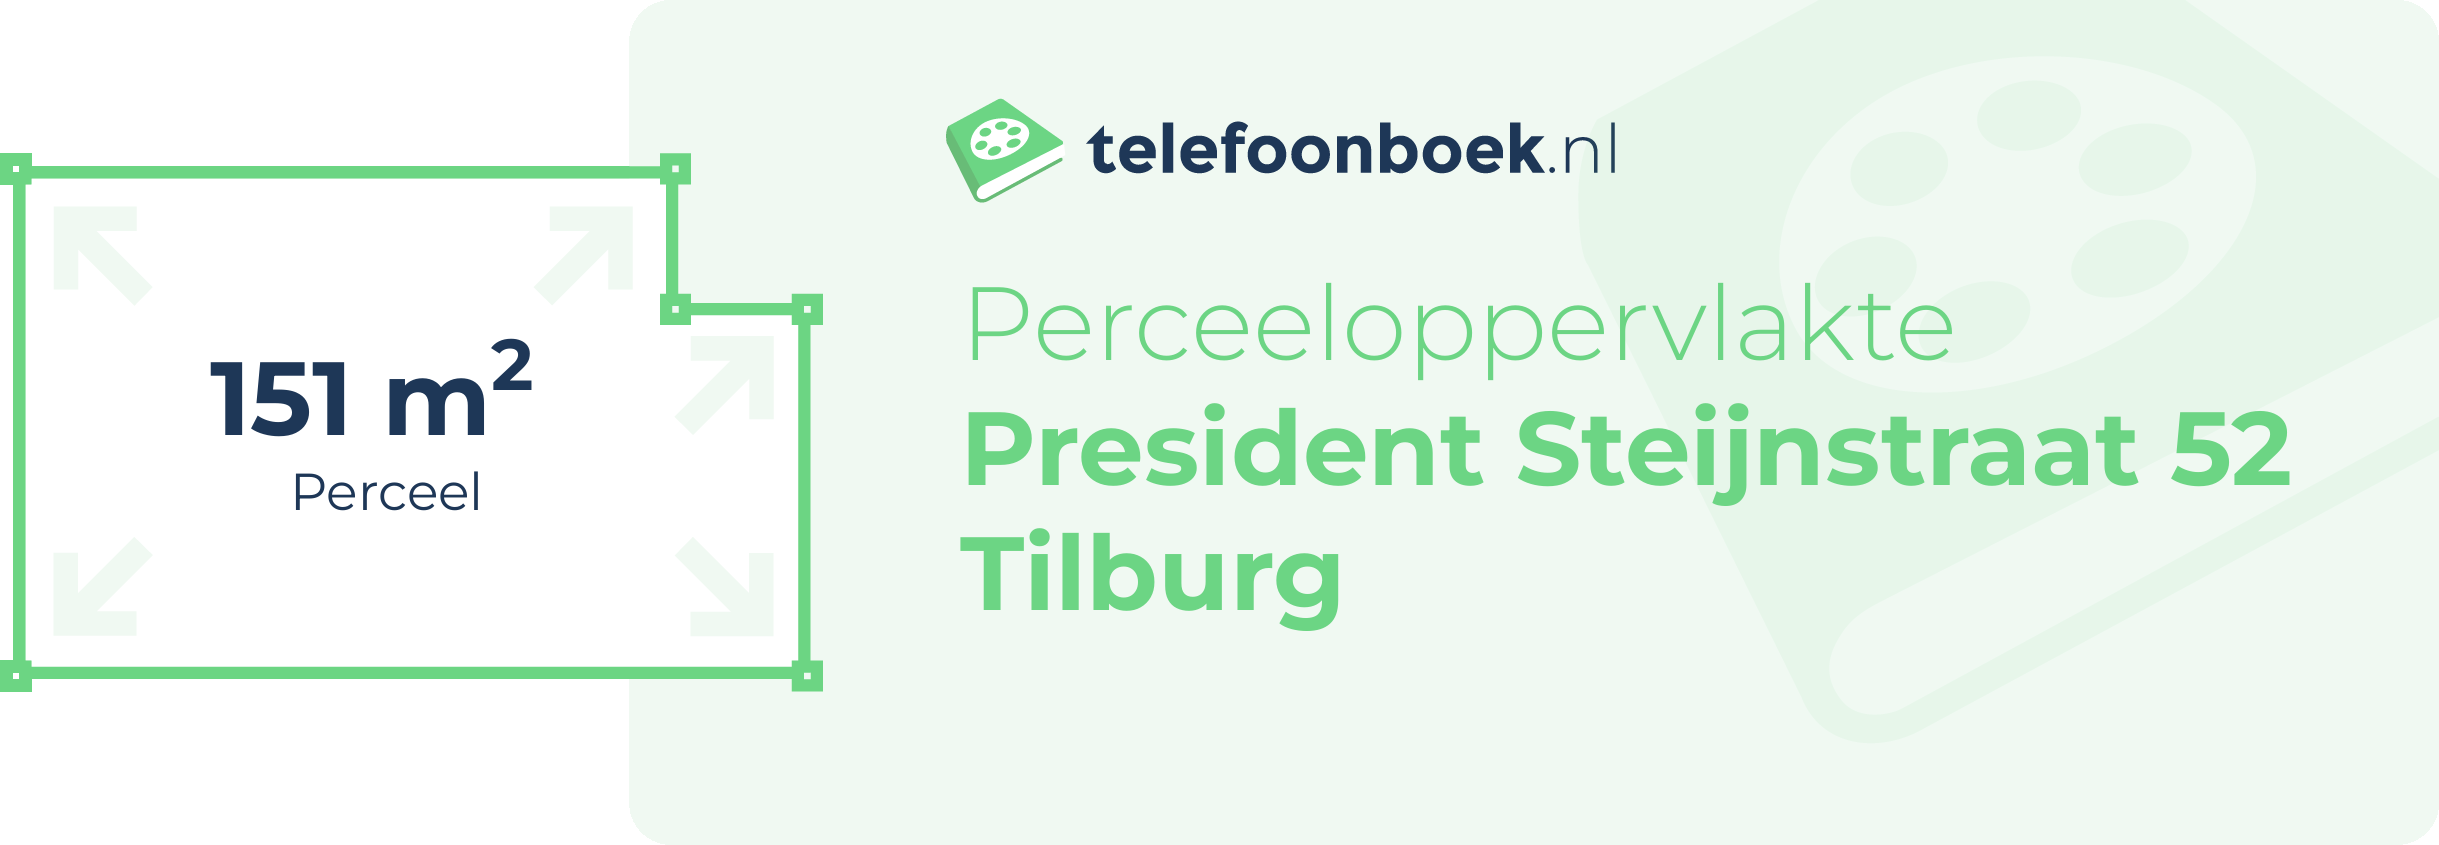 Perceeloppervlakte President Steijnstraat 52 Tilburg